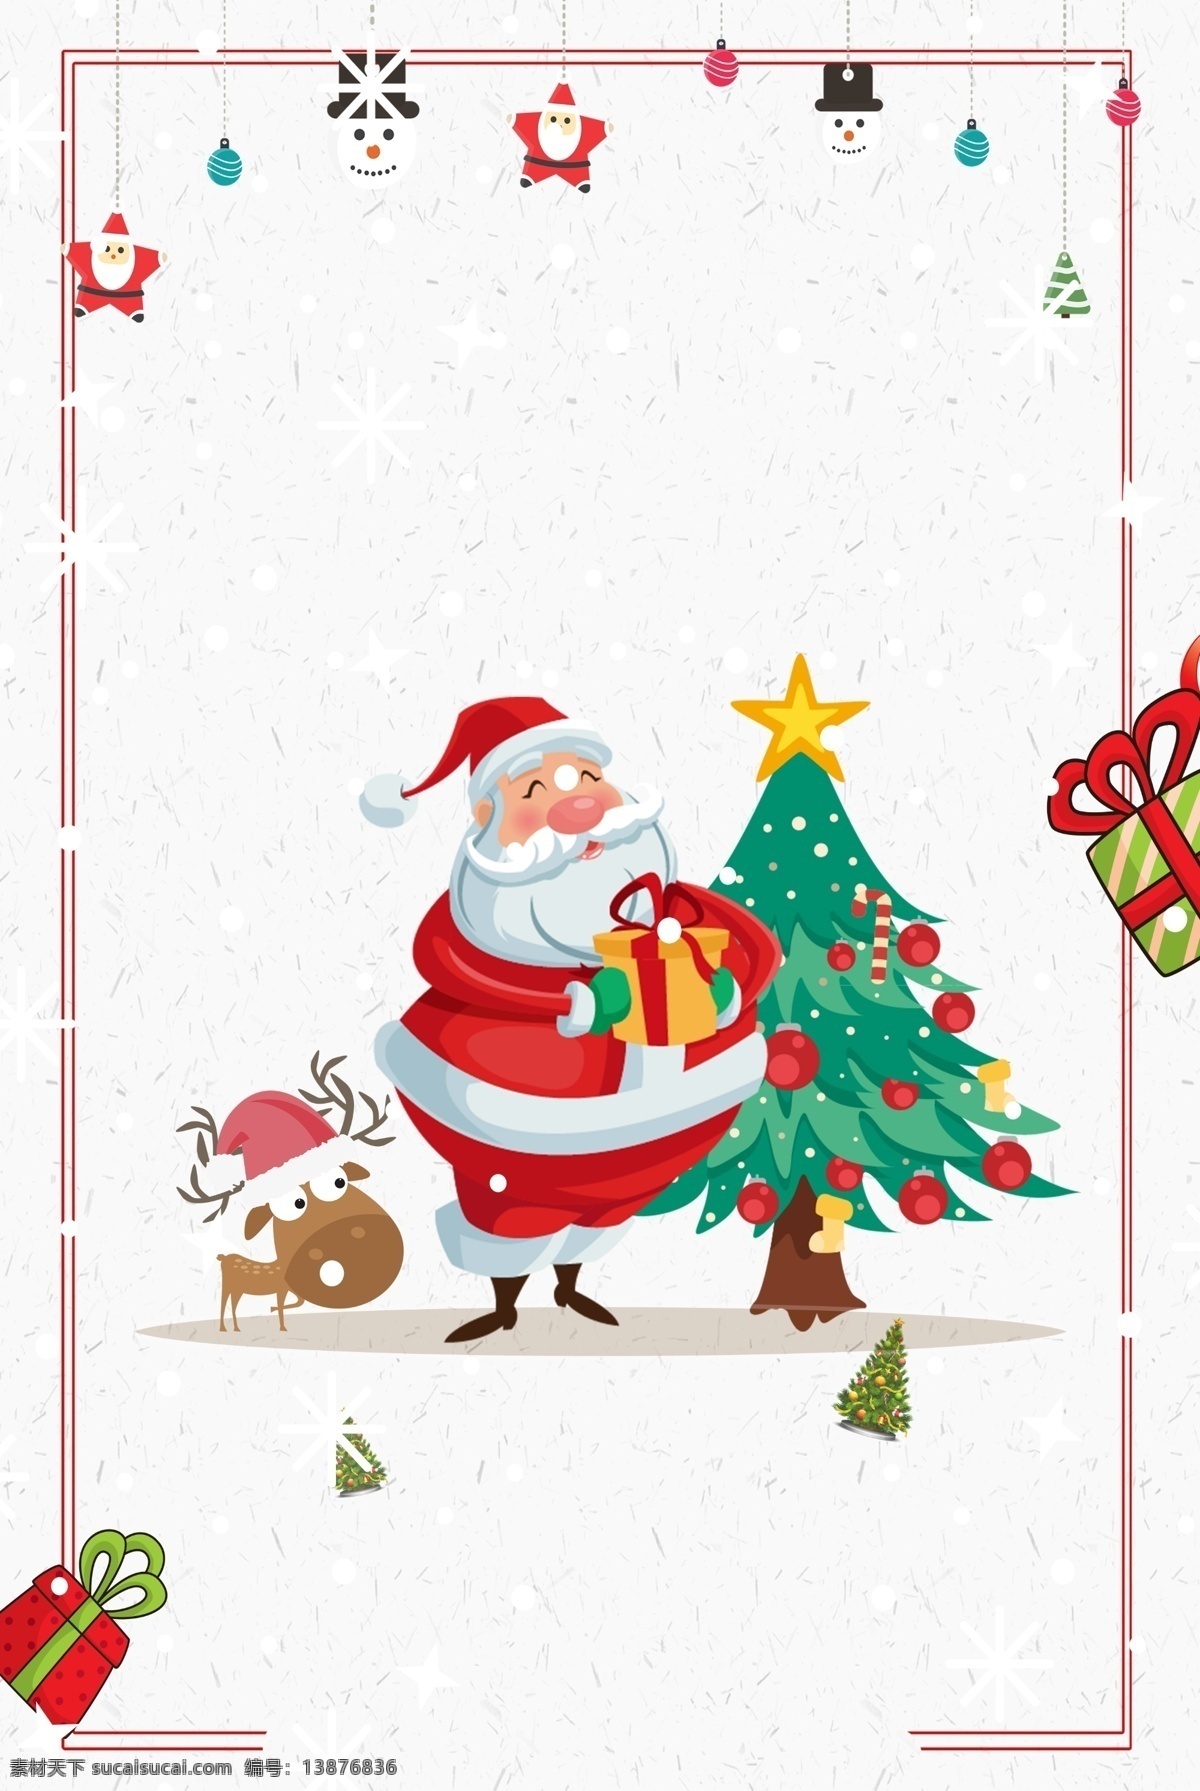 西方 节日 圣诞节 广告 背景 图 简约 红色 圣诞树 冬季 圣诞老人 卡通 铃铛 派对 活动 麋鹿 广告背景